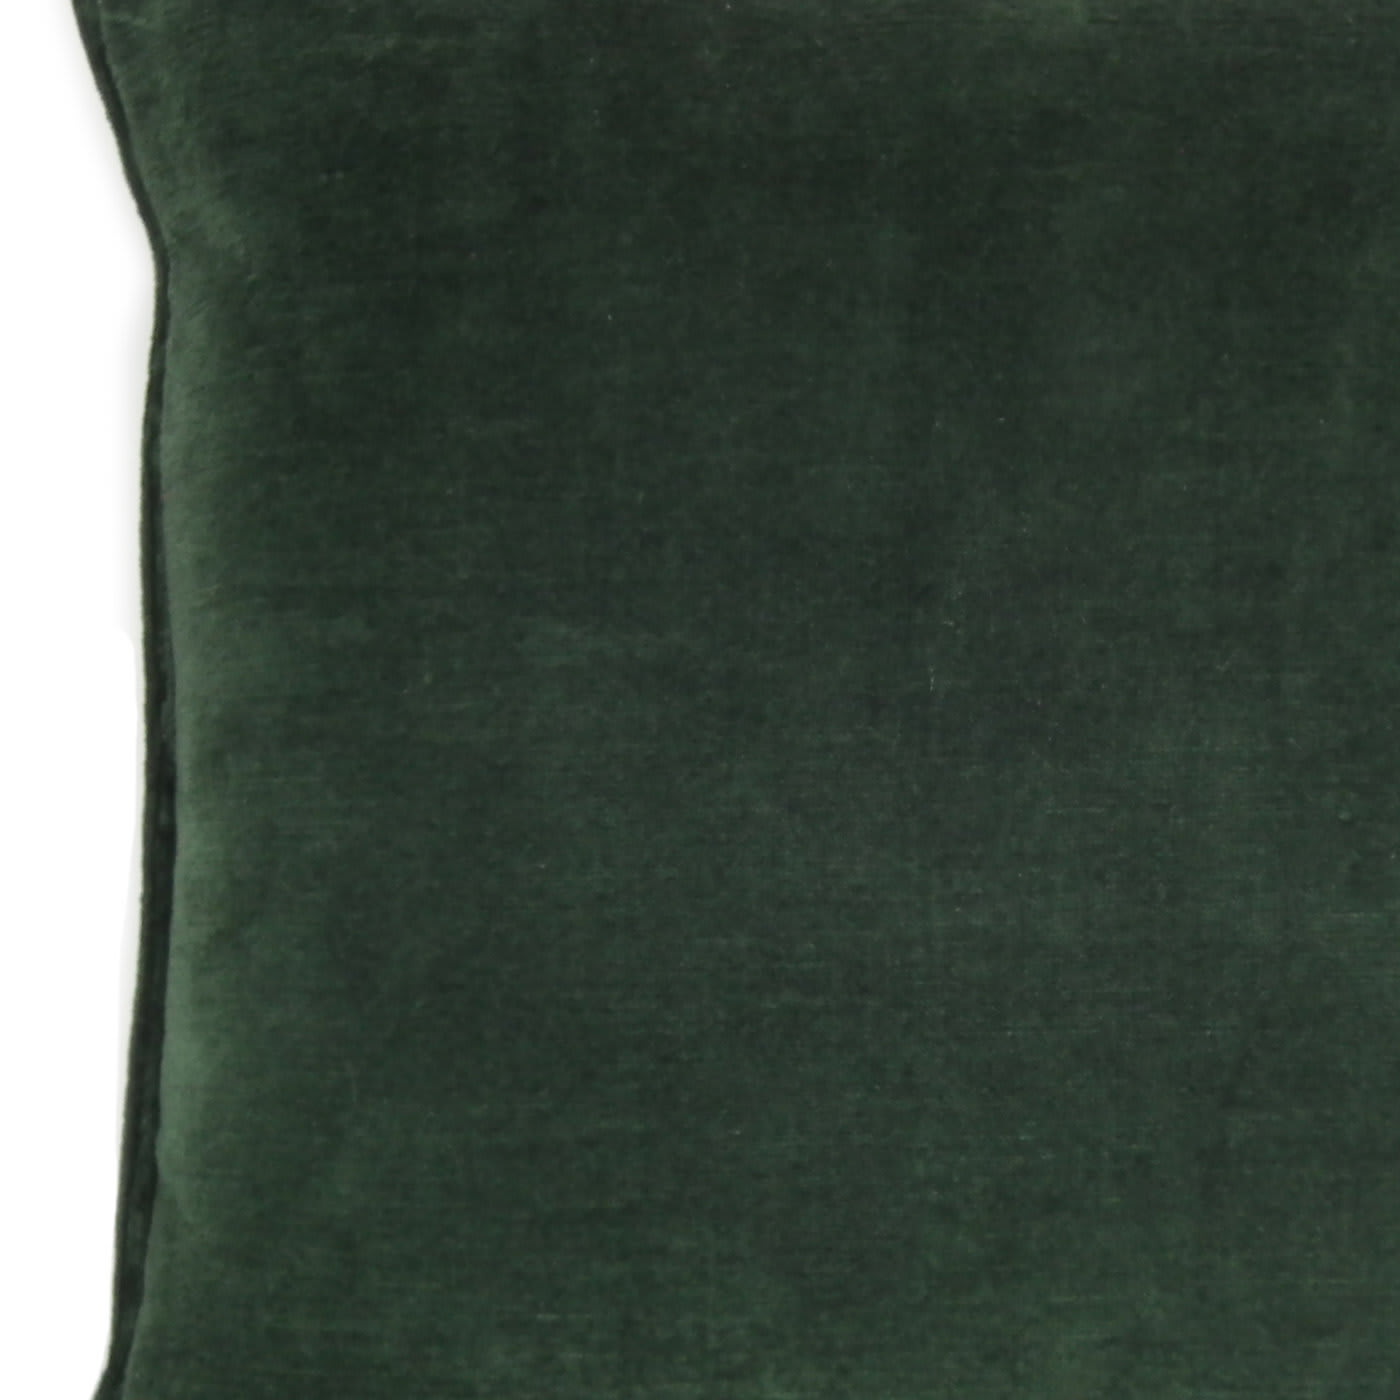 Dark Green Carré Cushion - l'Opificio